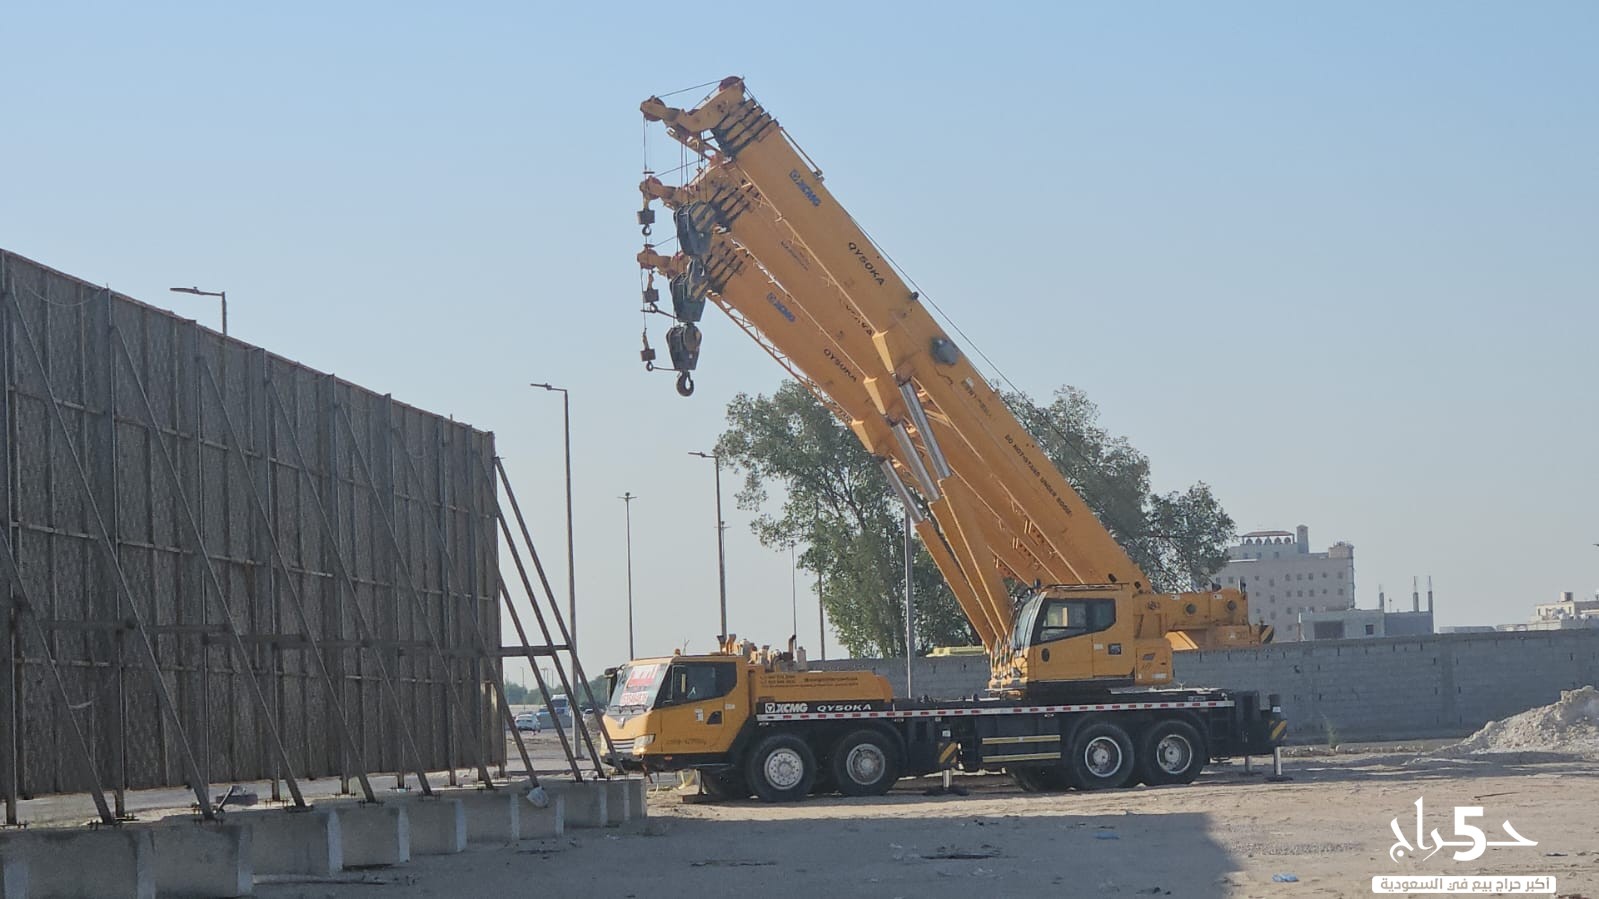 كرينات للايجار بالرياض كرين 100 طن للايجار في الرياض crane 100 ton for rent in Riyadh